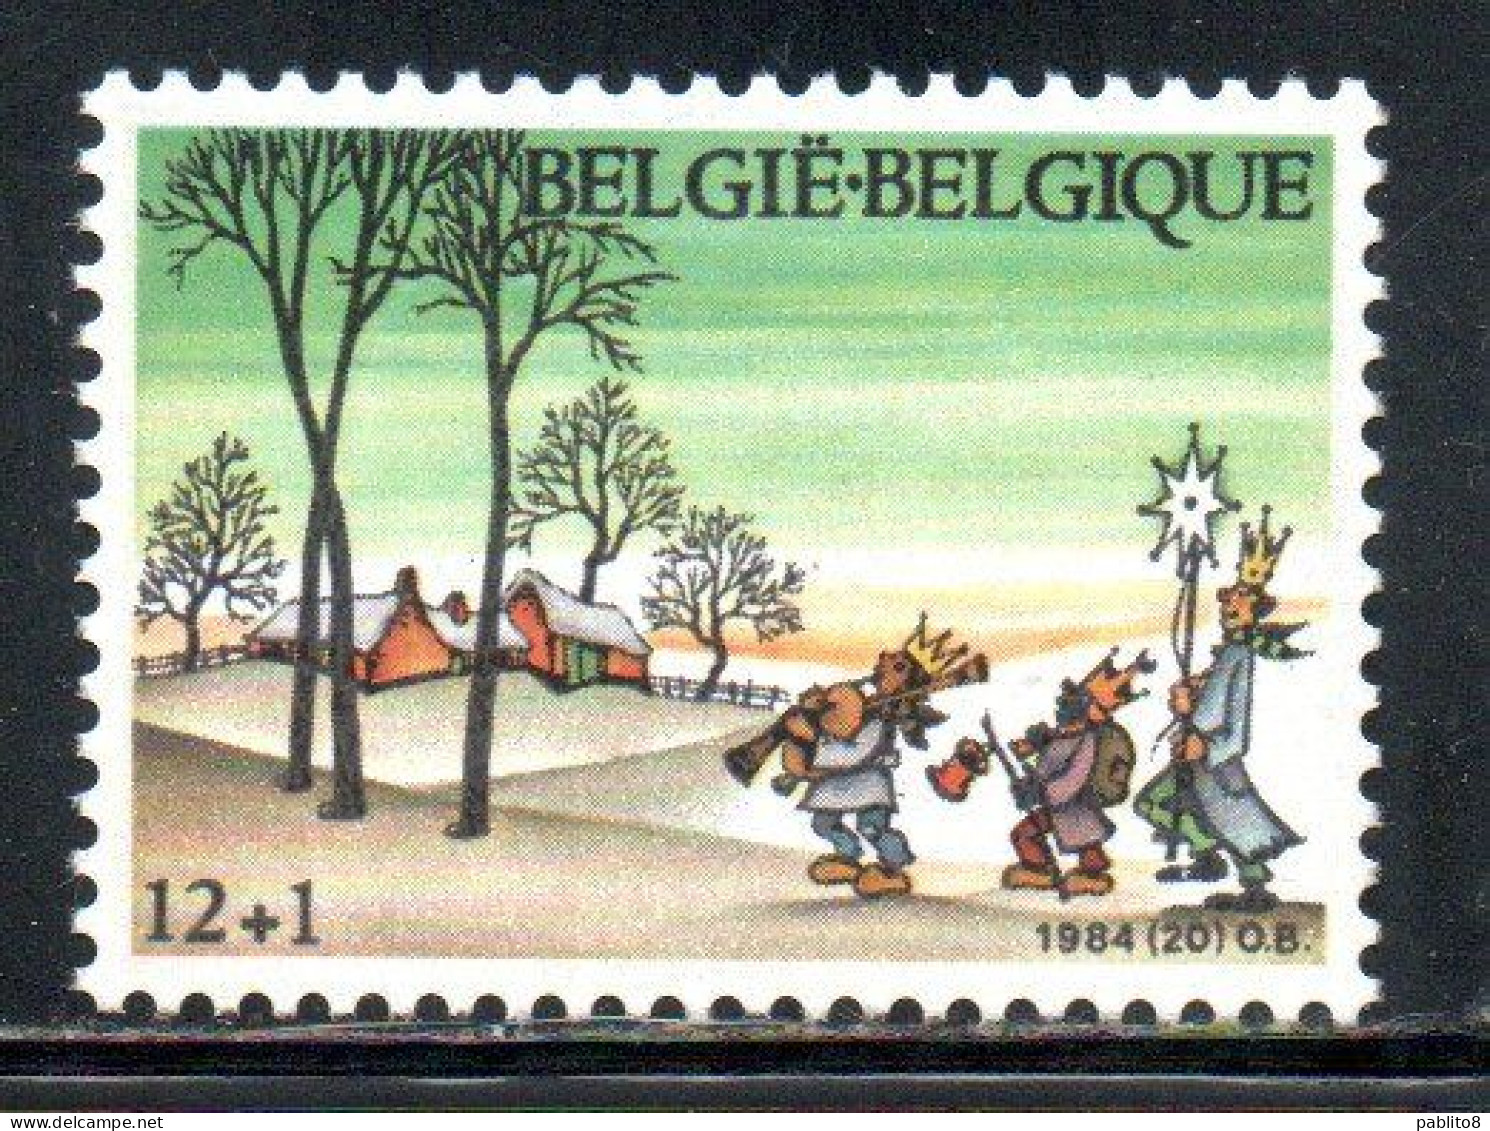 BELGIQUE BELGIE BELGIO BELGIUM 1984 CHRISTMAS NOEL NATALE WEIHNACHTEN NAVIDAD 12 + 1fr MNH - Neufs